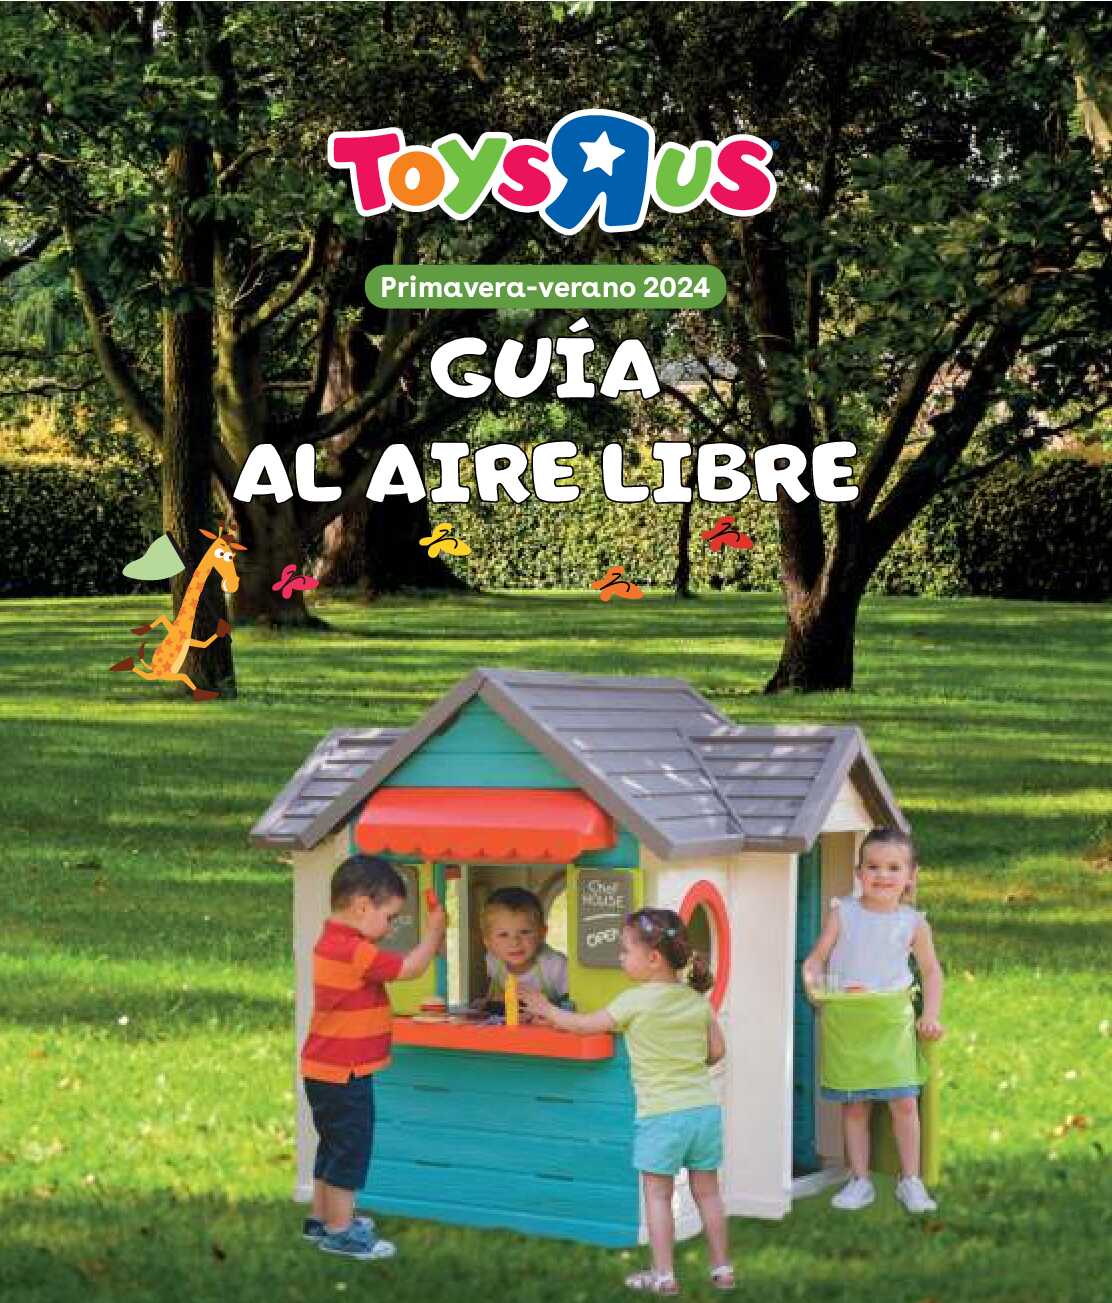 Guía aire libre Toys R Us. Página 01